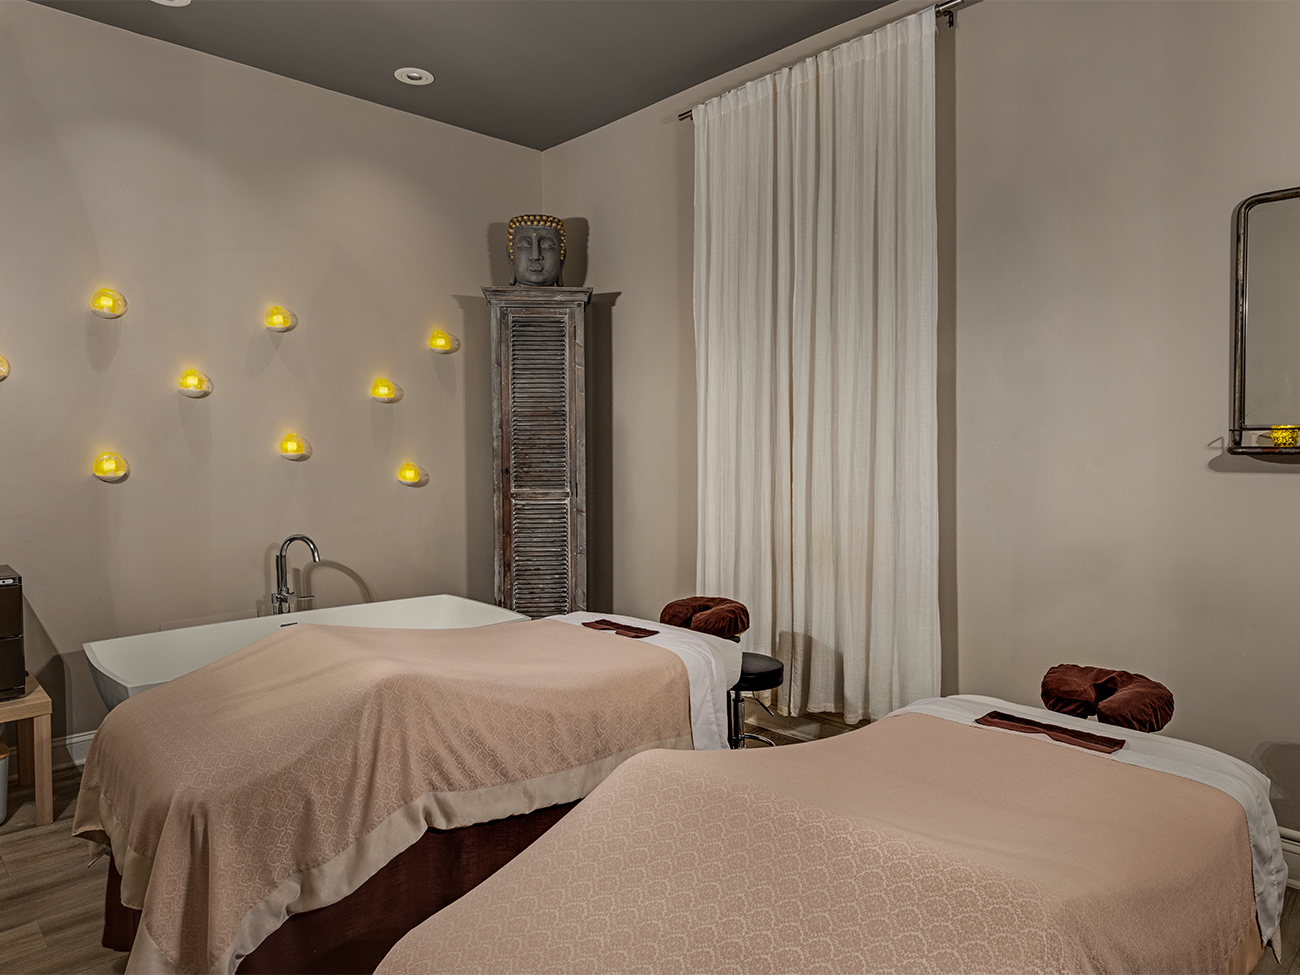 Namaste Spa - Treatment Room